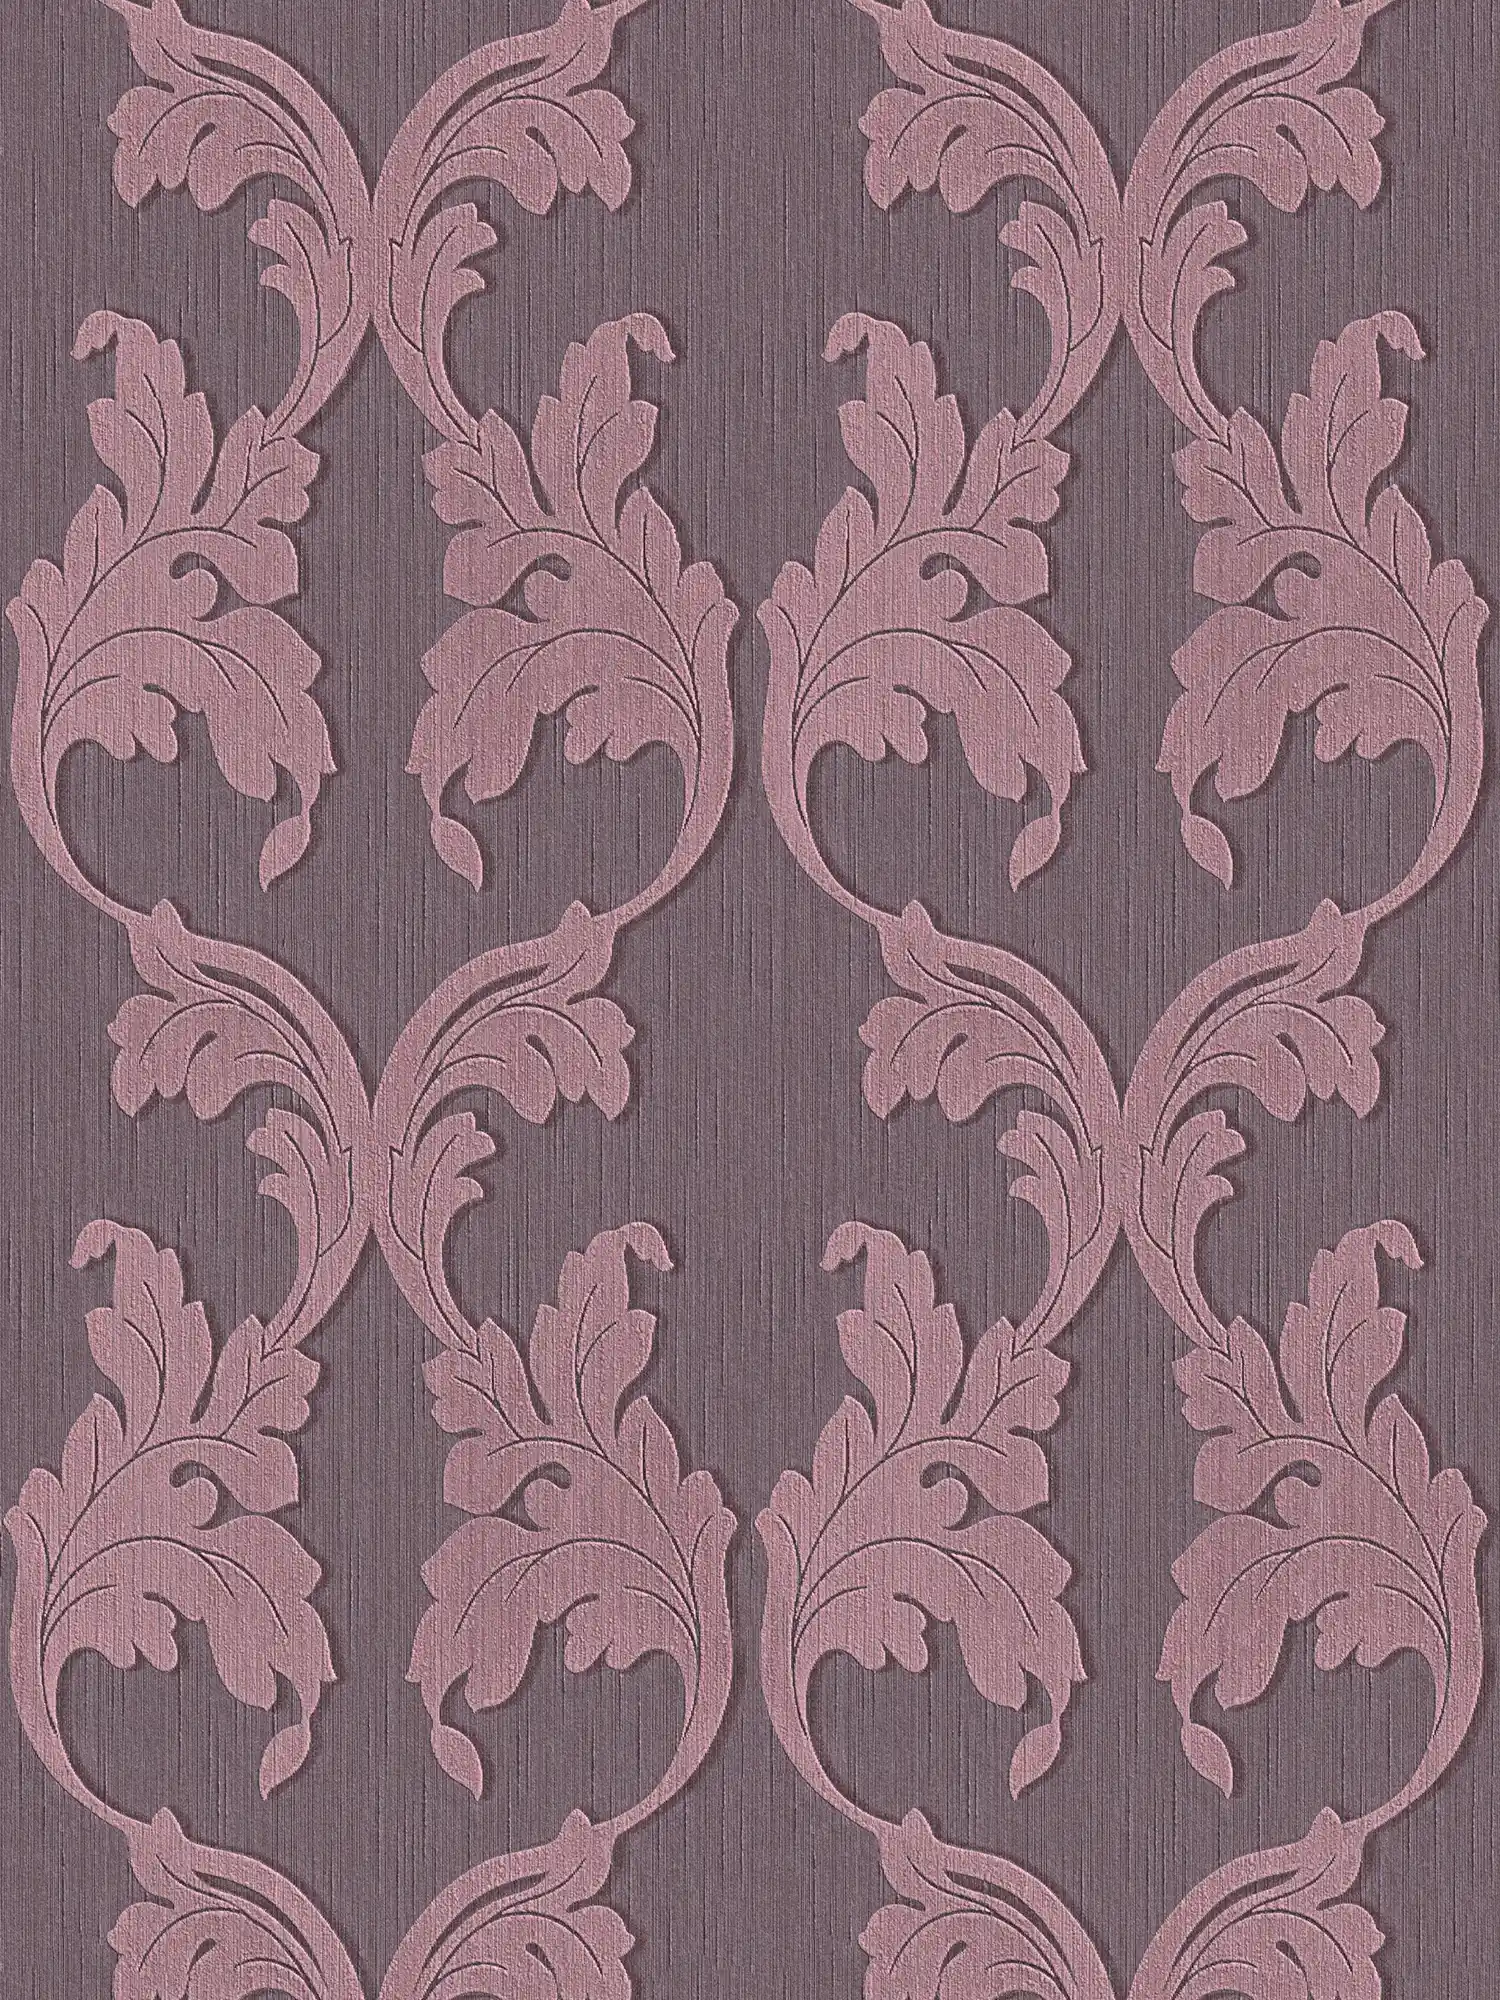 behang van textiel met barokke ranken - paars
